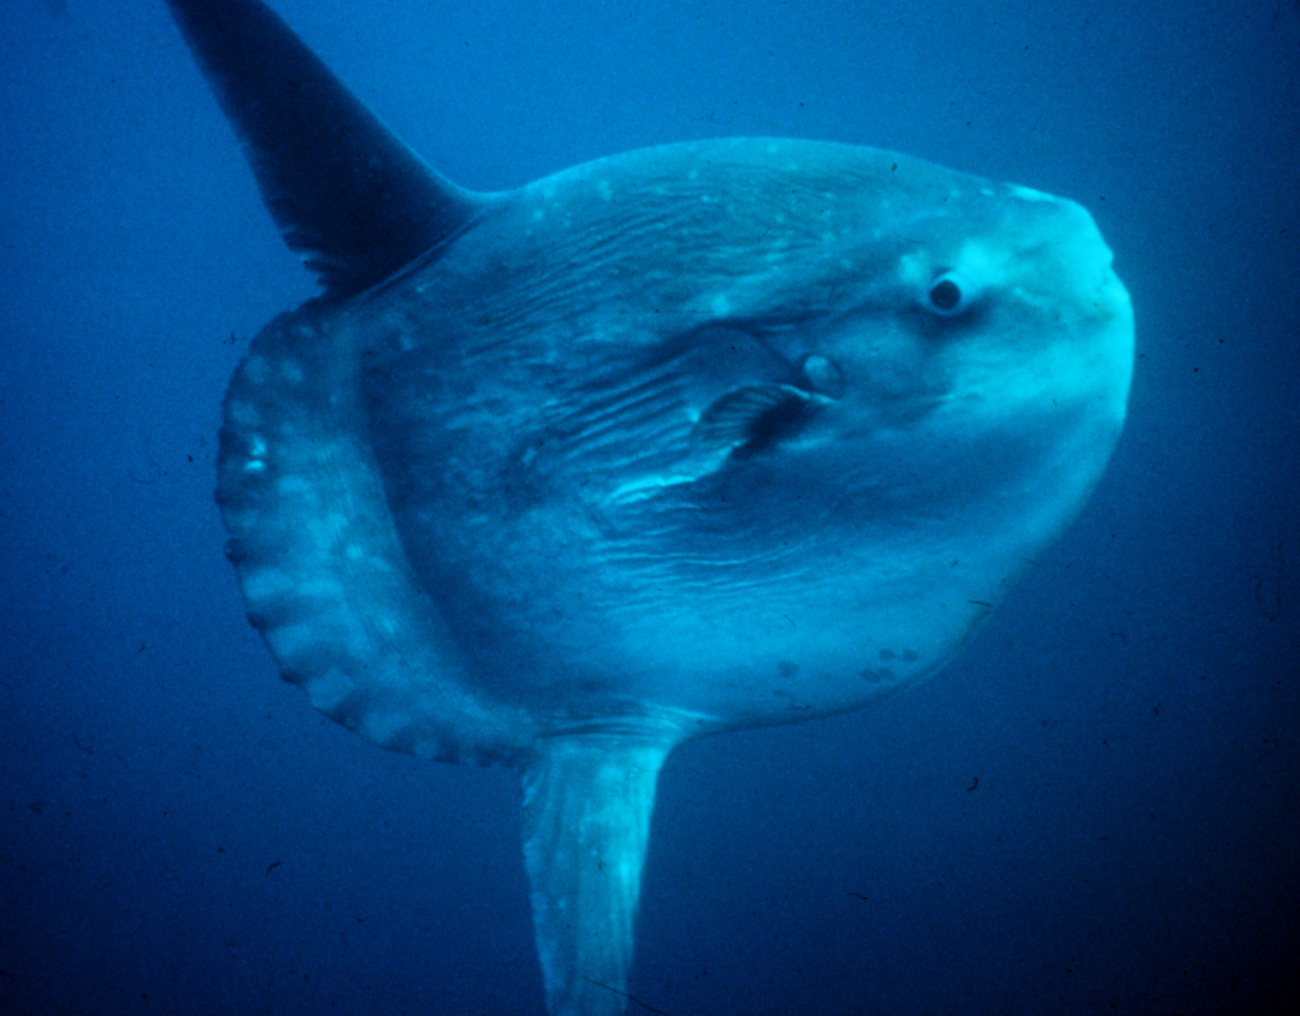 An ocean sunfish or mola mola